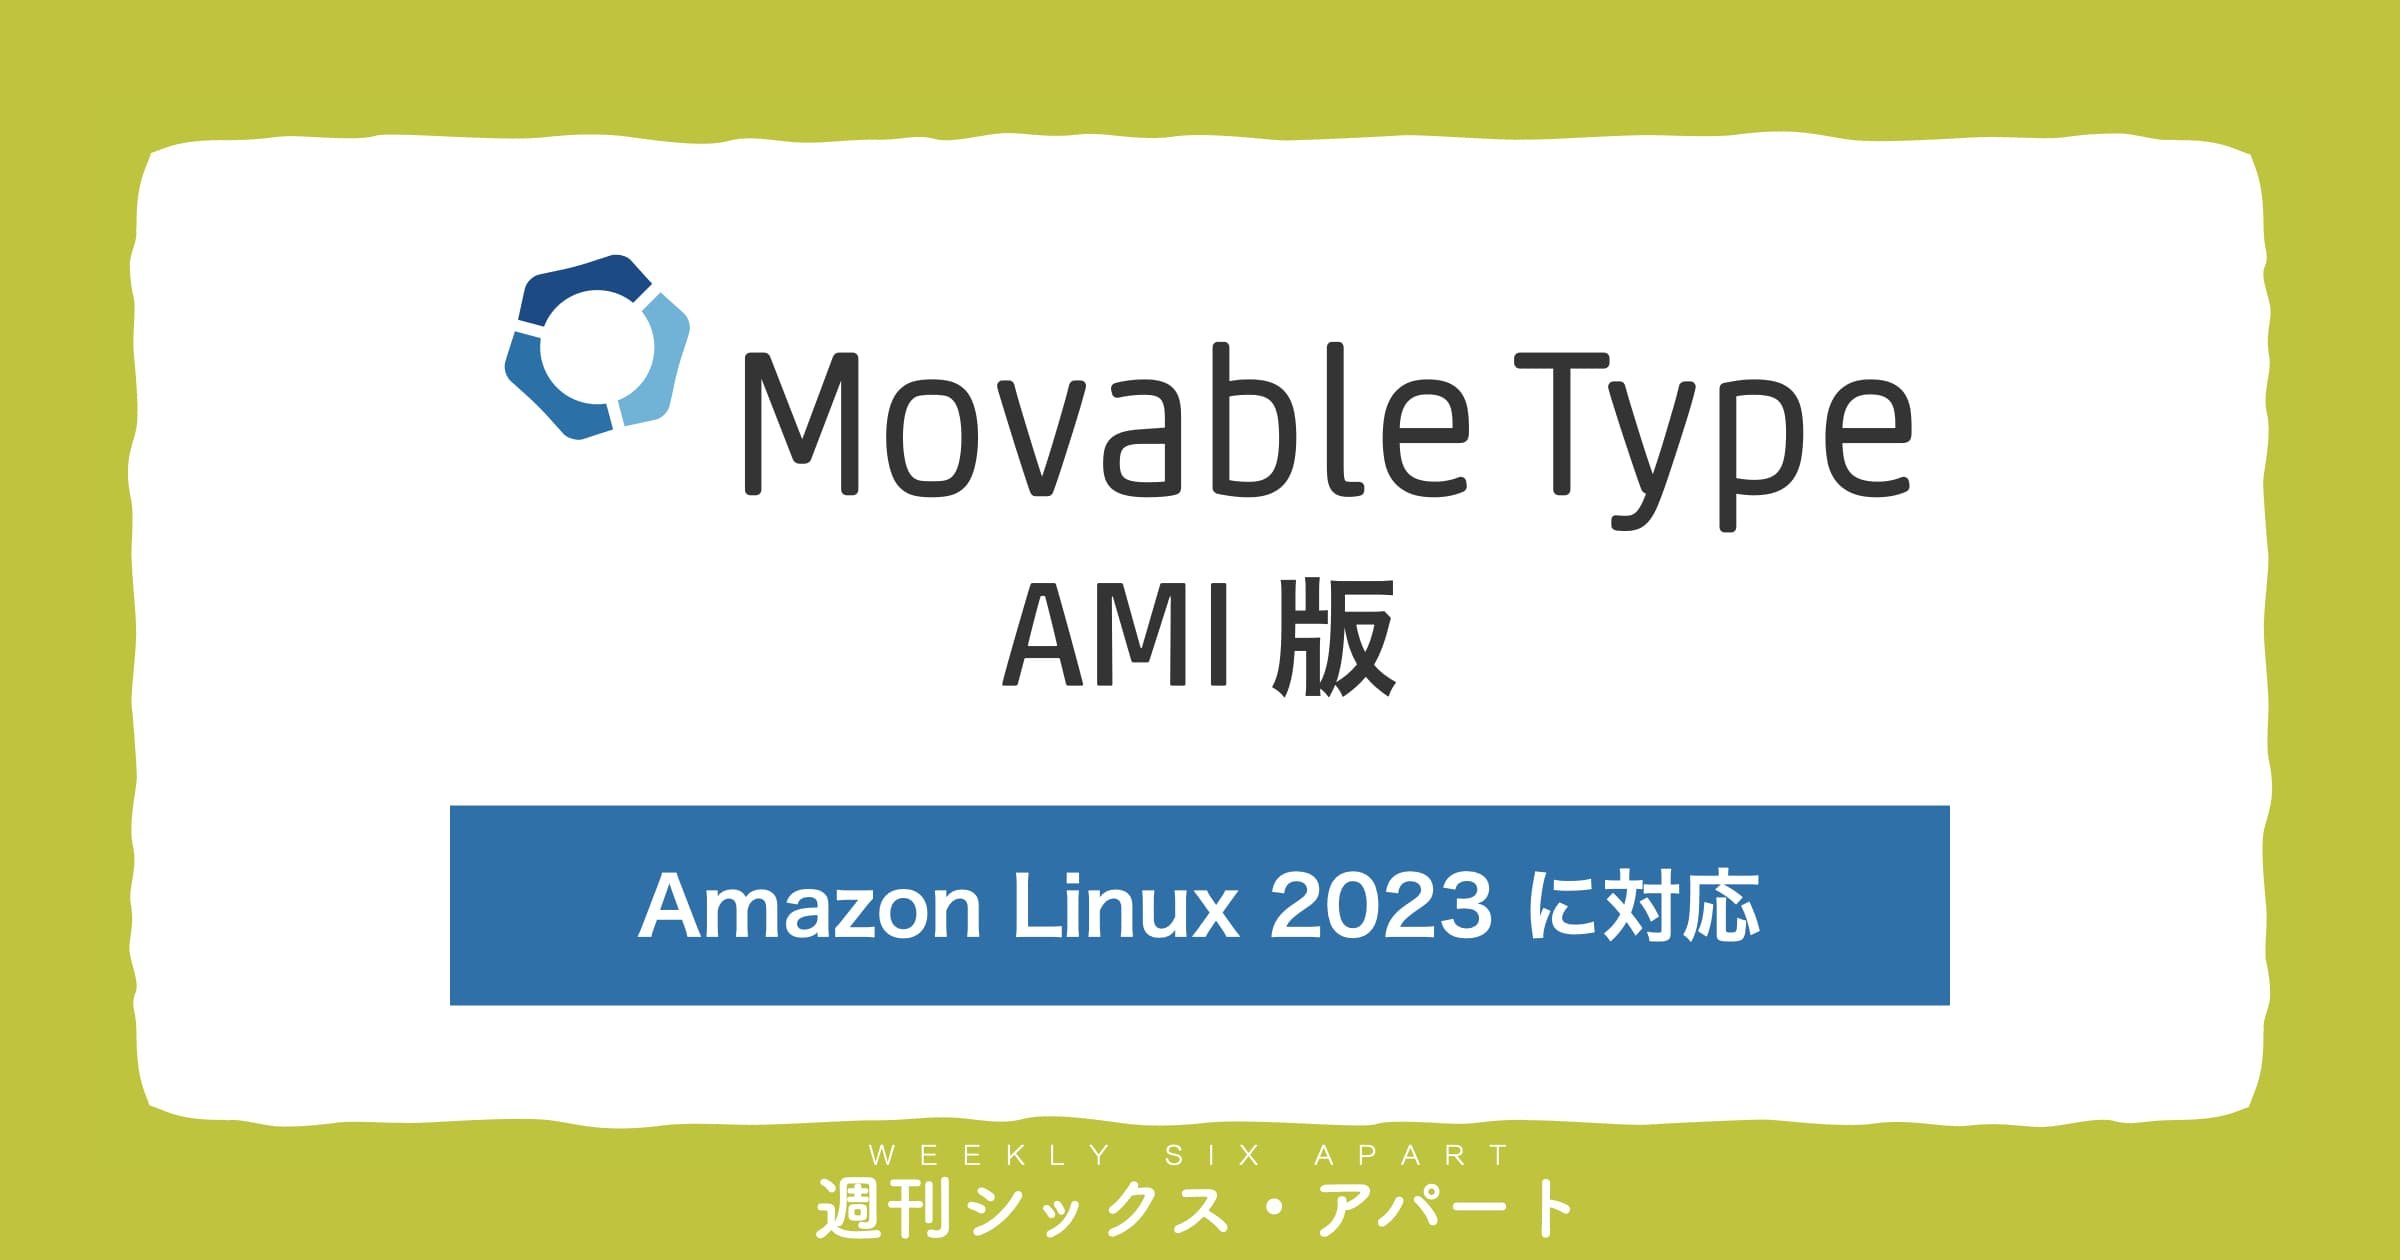 Movable Type AMI版に、Amazon Linux 2023 対応マシンイメージを追加しました #週刊SA